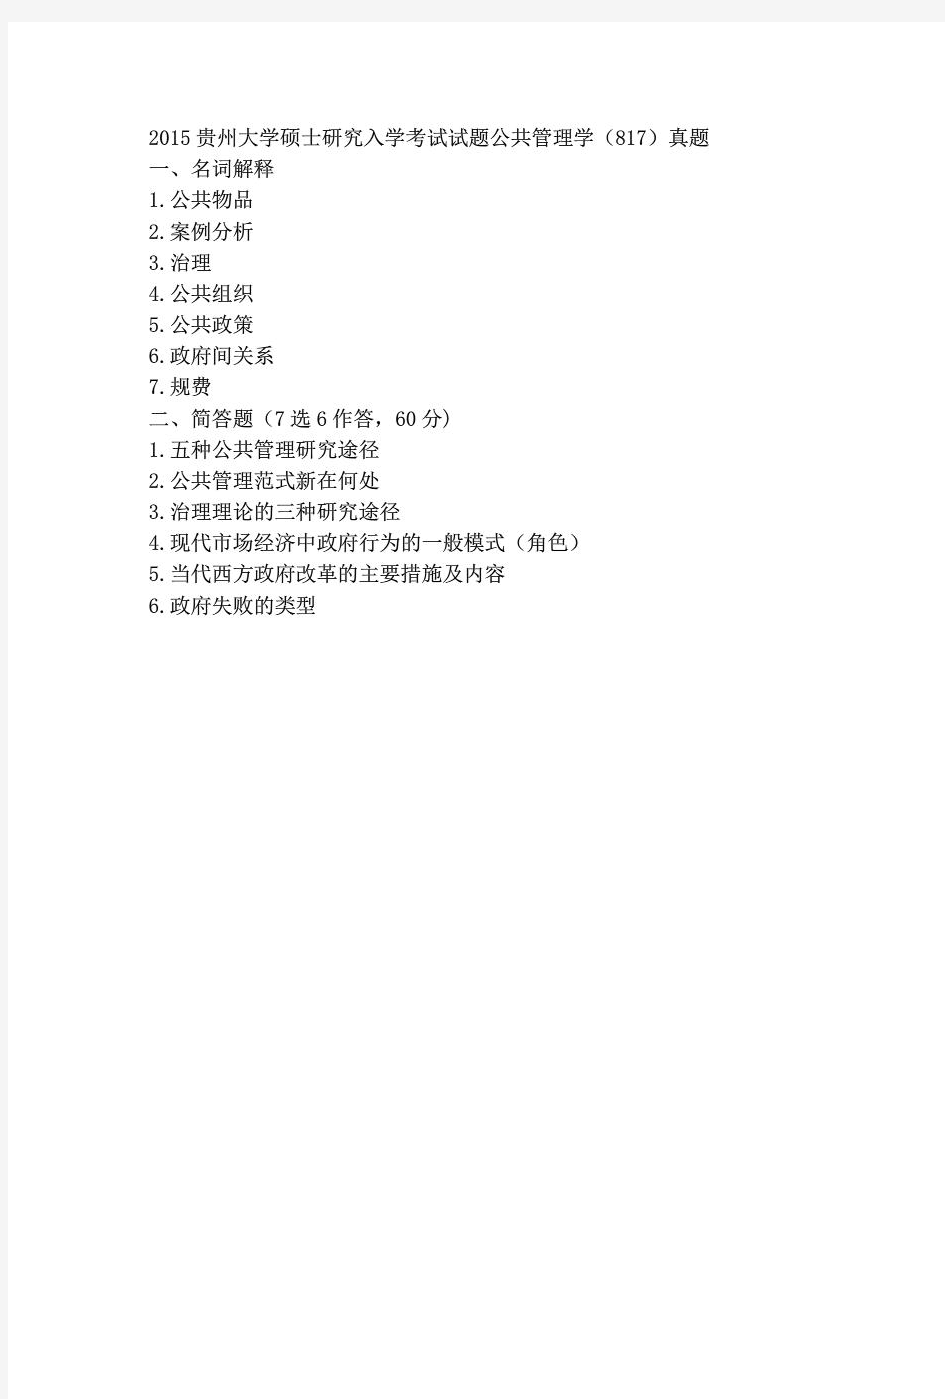 贵州大学817公共管理学2013-2015年(回忆版)考研专业课历年真题汇编